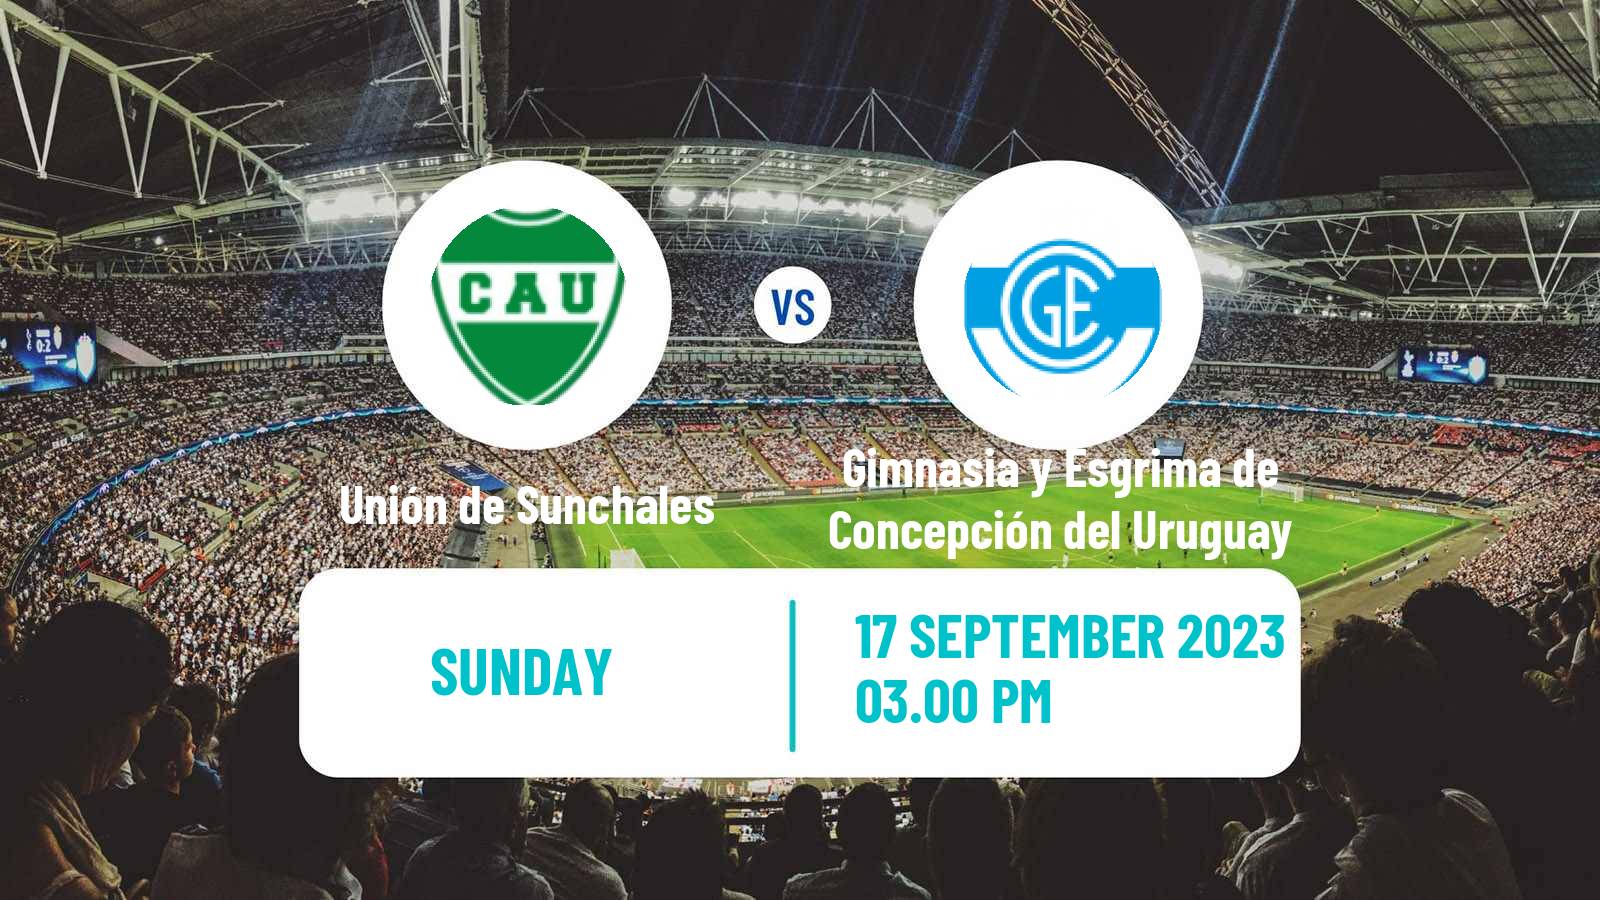 Soccer Argentinian Torneo Federal Unión de Sunchales - Gimnasia y Esgrima de Concepción del Uruguay